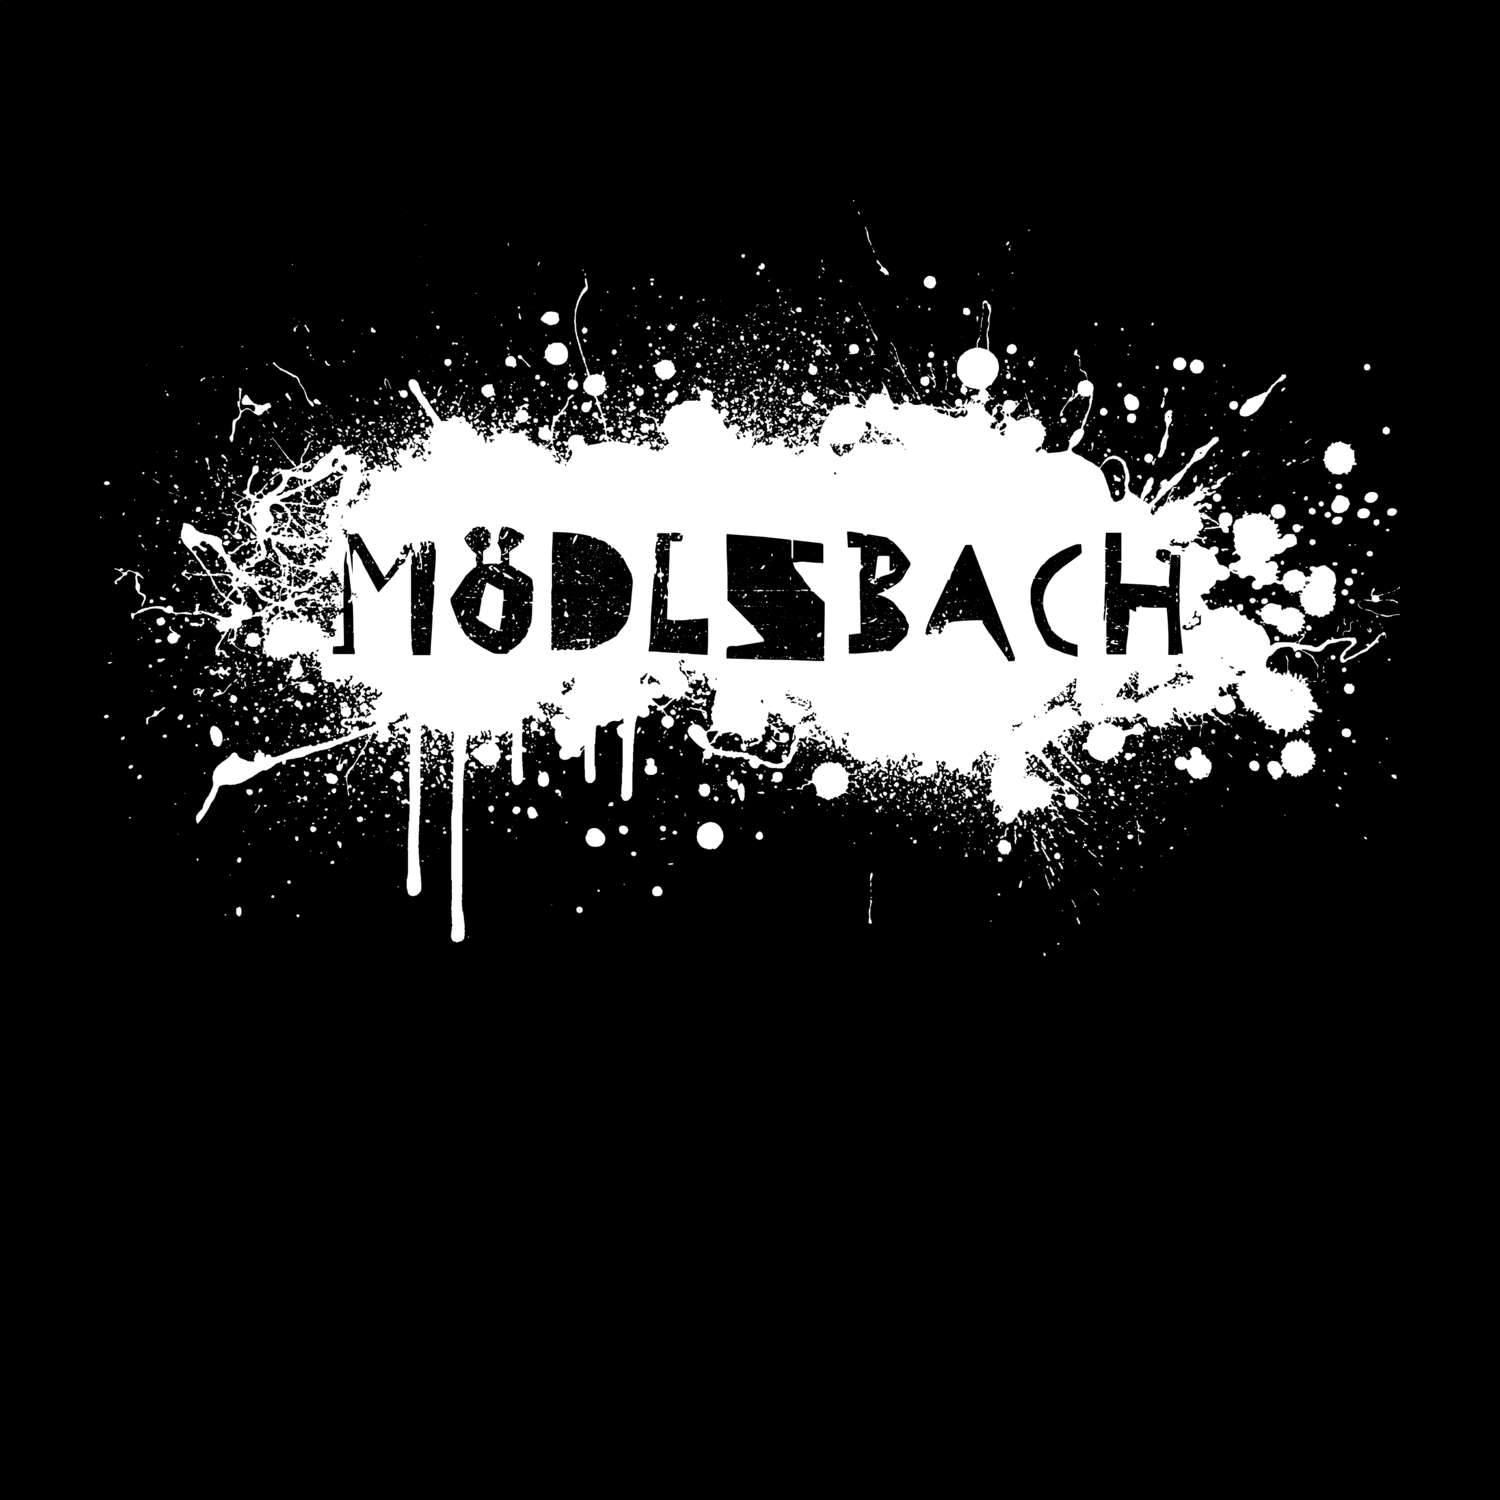 Mödlsbach T-Shirt »Paint Splash Punk«